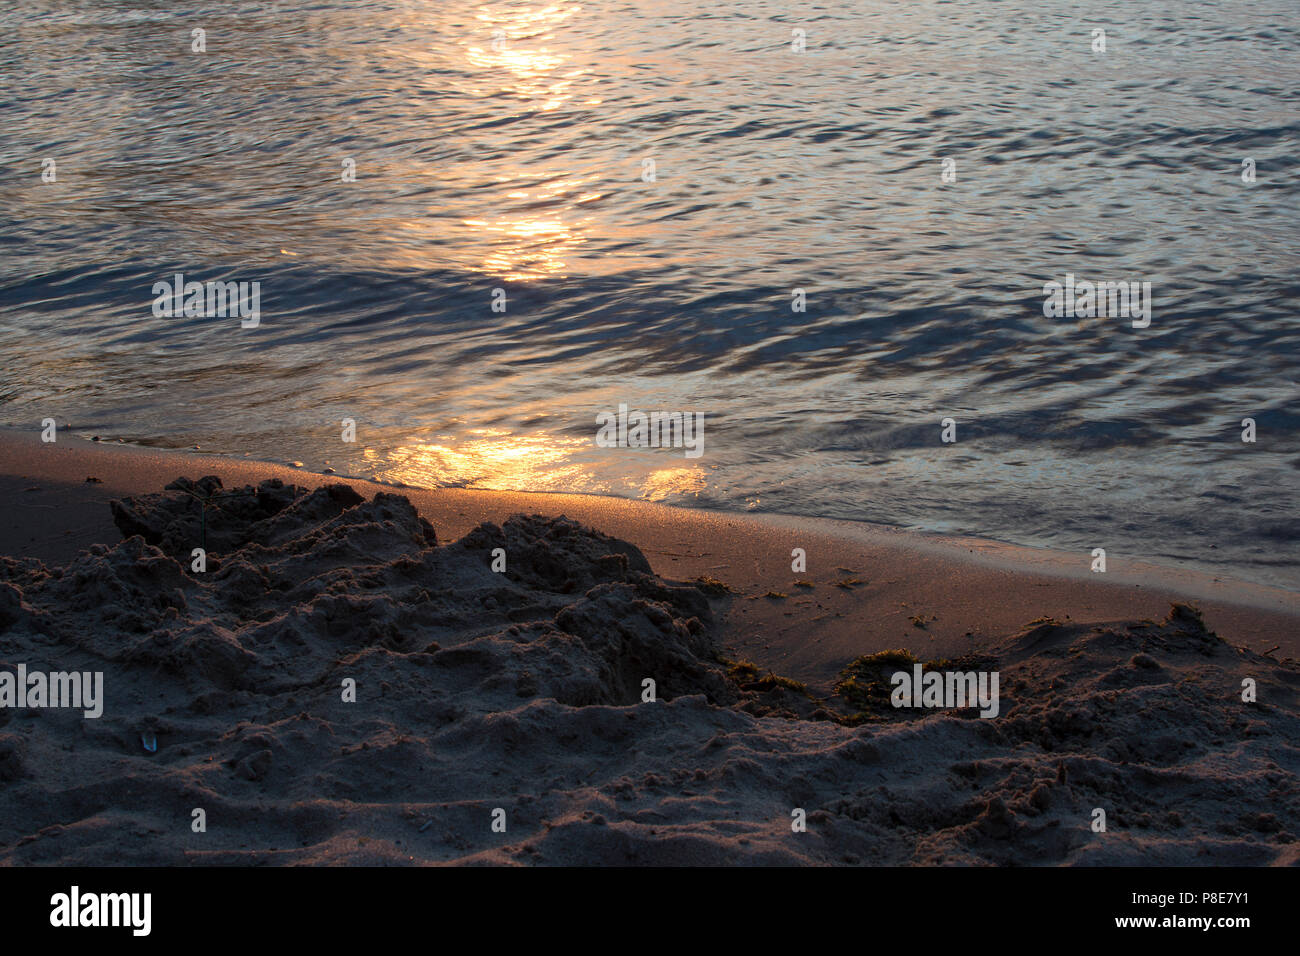 Nahaufnahme des glitzernden Sand am Strand mit Reflexion der Sonne im Wasser. Stockfoto